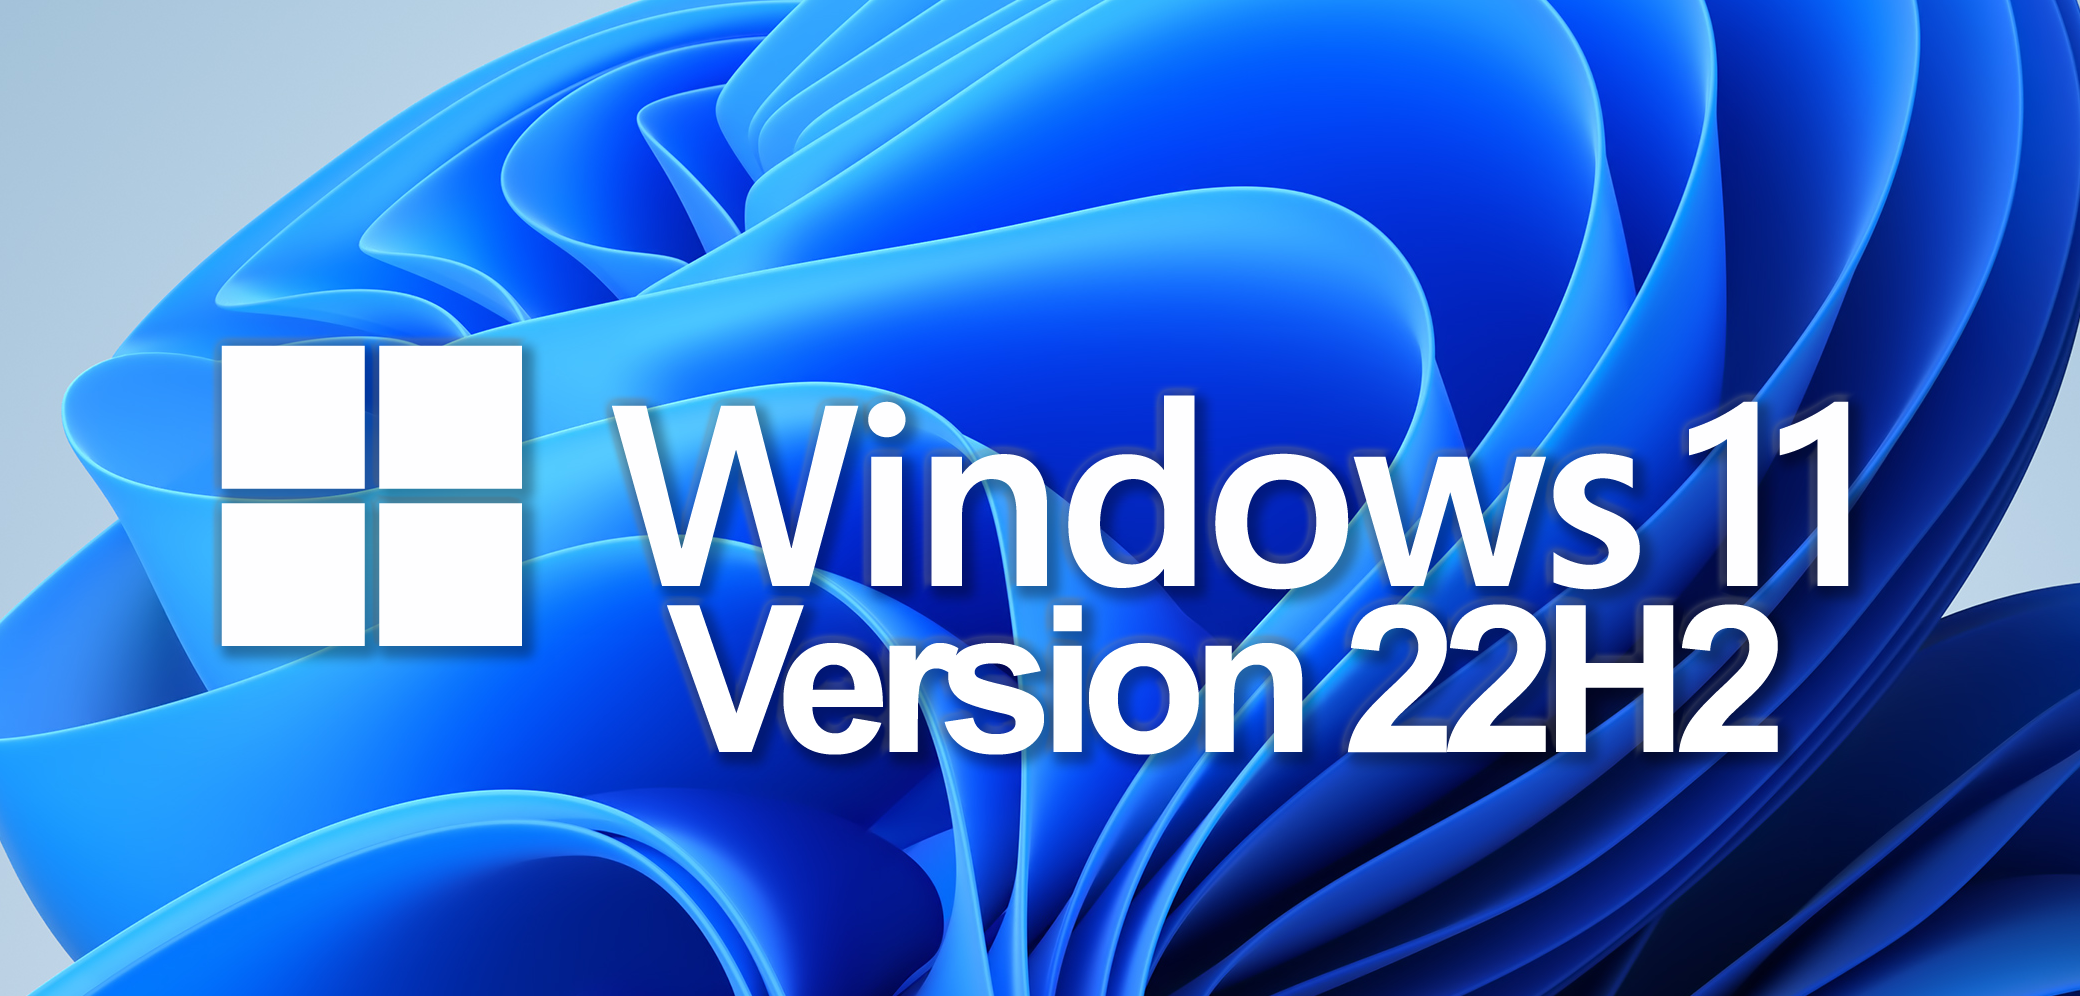 Windows 11 version 22H2 udgivet 20. september 2022.